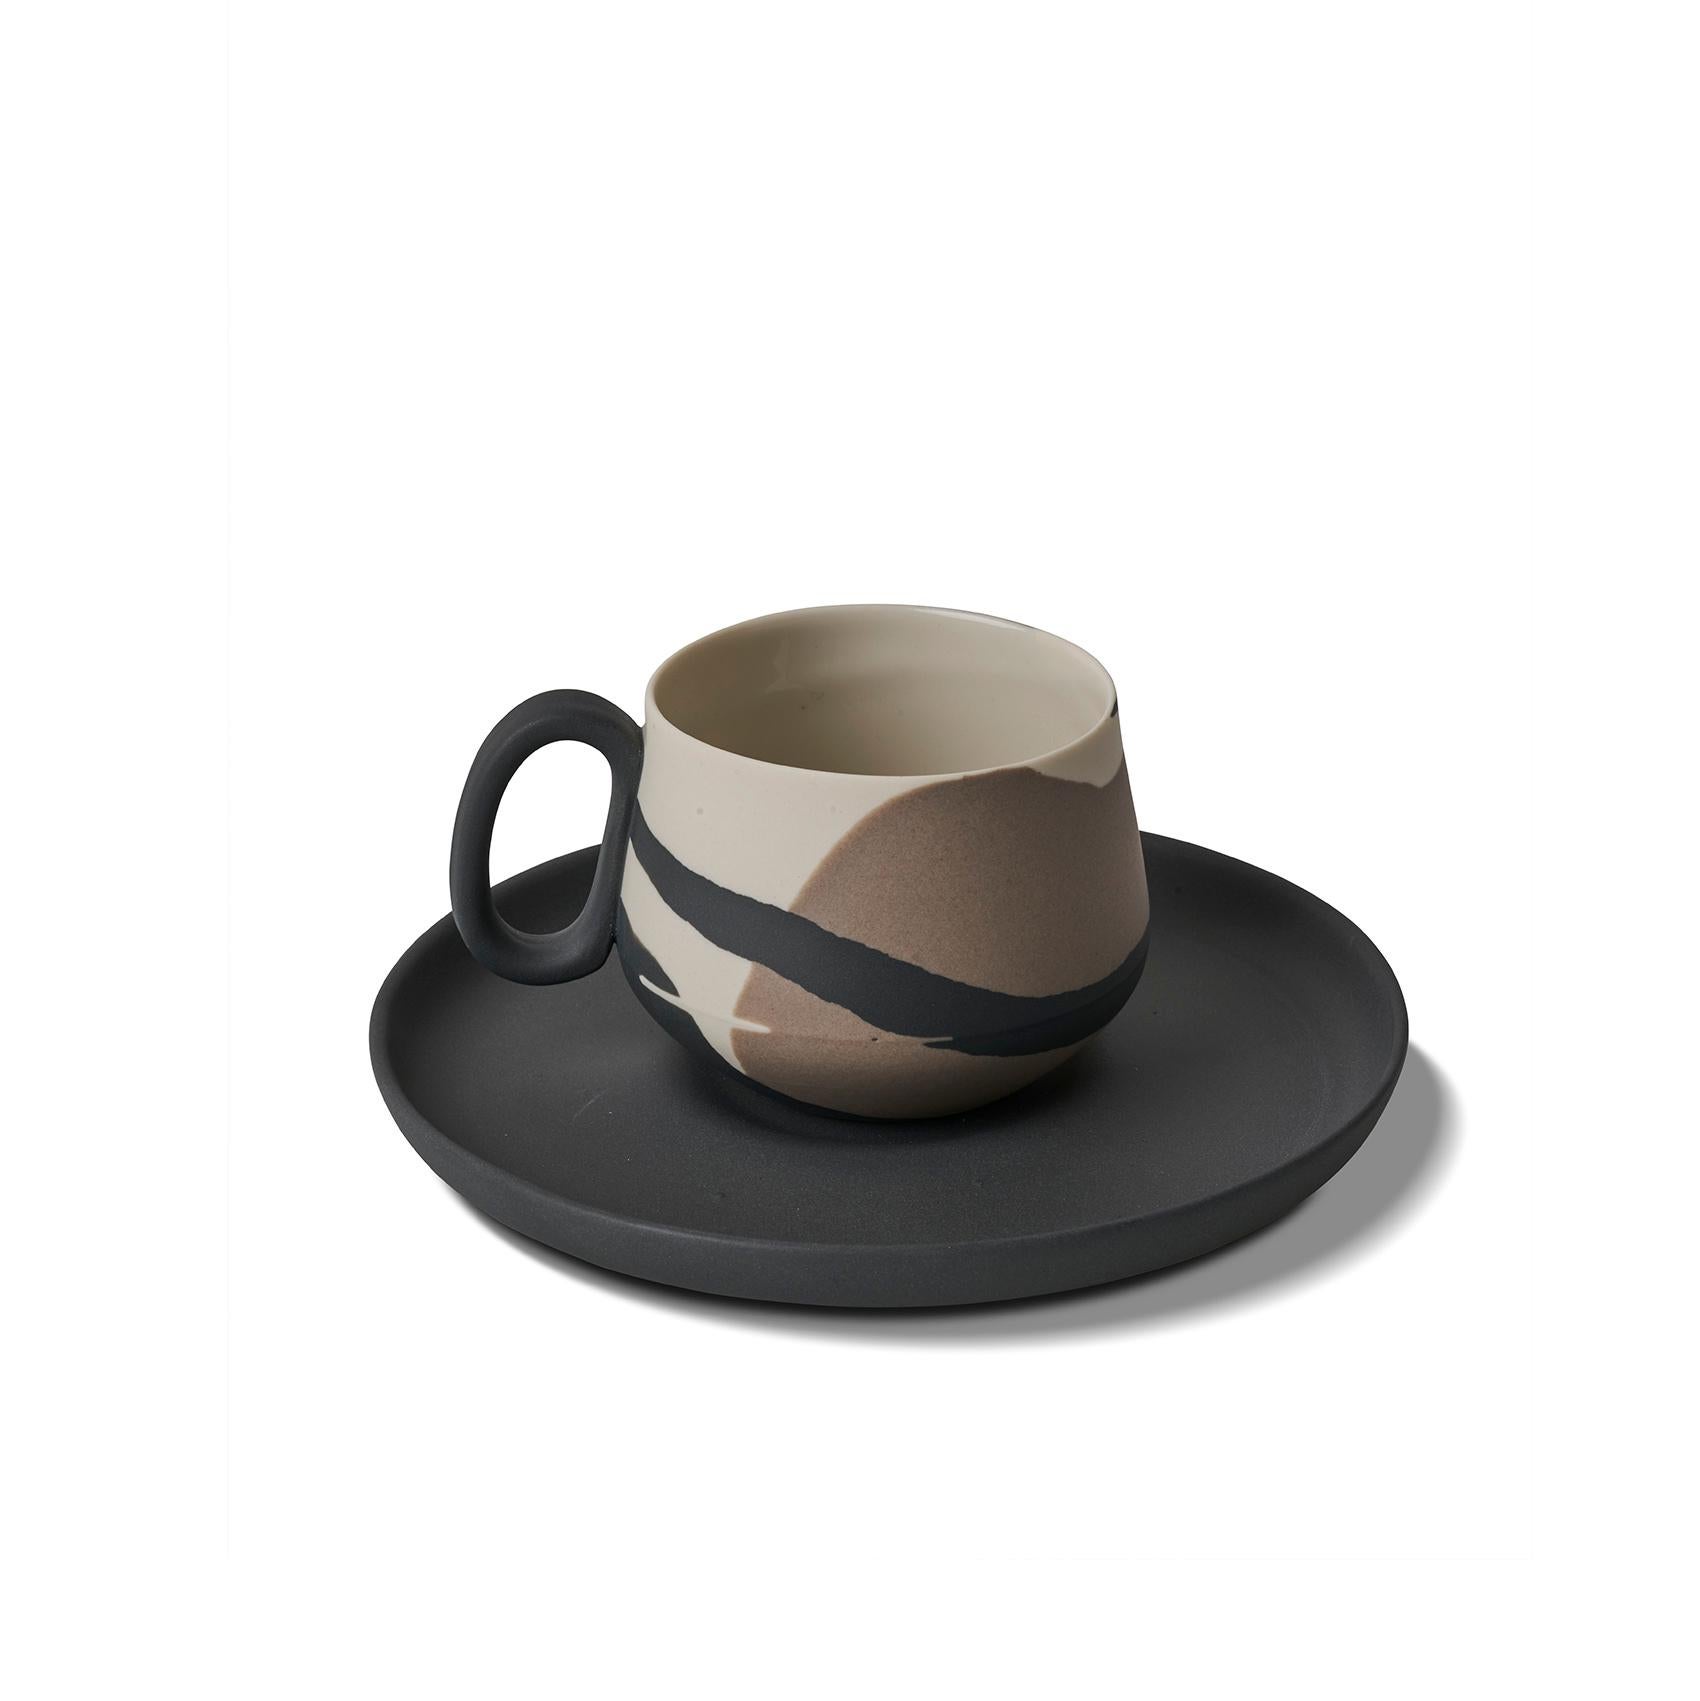 Die sorgfältig von Hand gefertigten Espressotassen von Esma Dereboy sind so konzipiert, dass sie Ihrem täglichen Kaffeegenuss einen Hauch von Luxus verleihen. Mit ihren einzigartigen Farben bilden diese Espressotassen in Kombination mit den